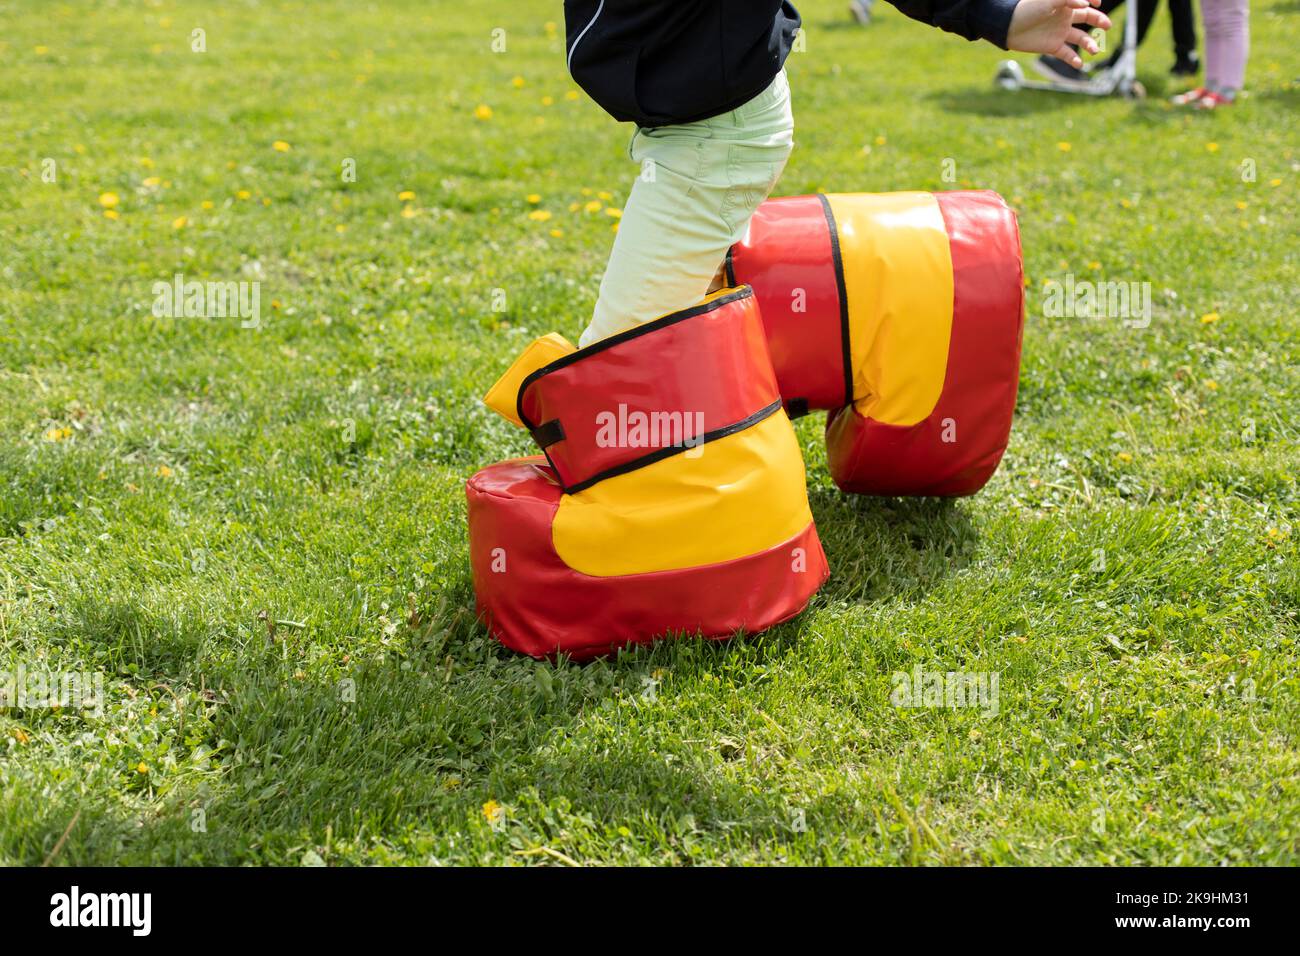 Lustige Schuhe für das Spiel. Spaß Urlaub des Kindes im Sommer. Unterhaltung auf grünem Gras. Spielen auf dem Rasen. Kind in unbequemen Schuhen. Stockfoto